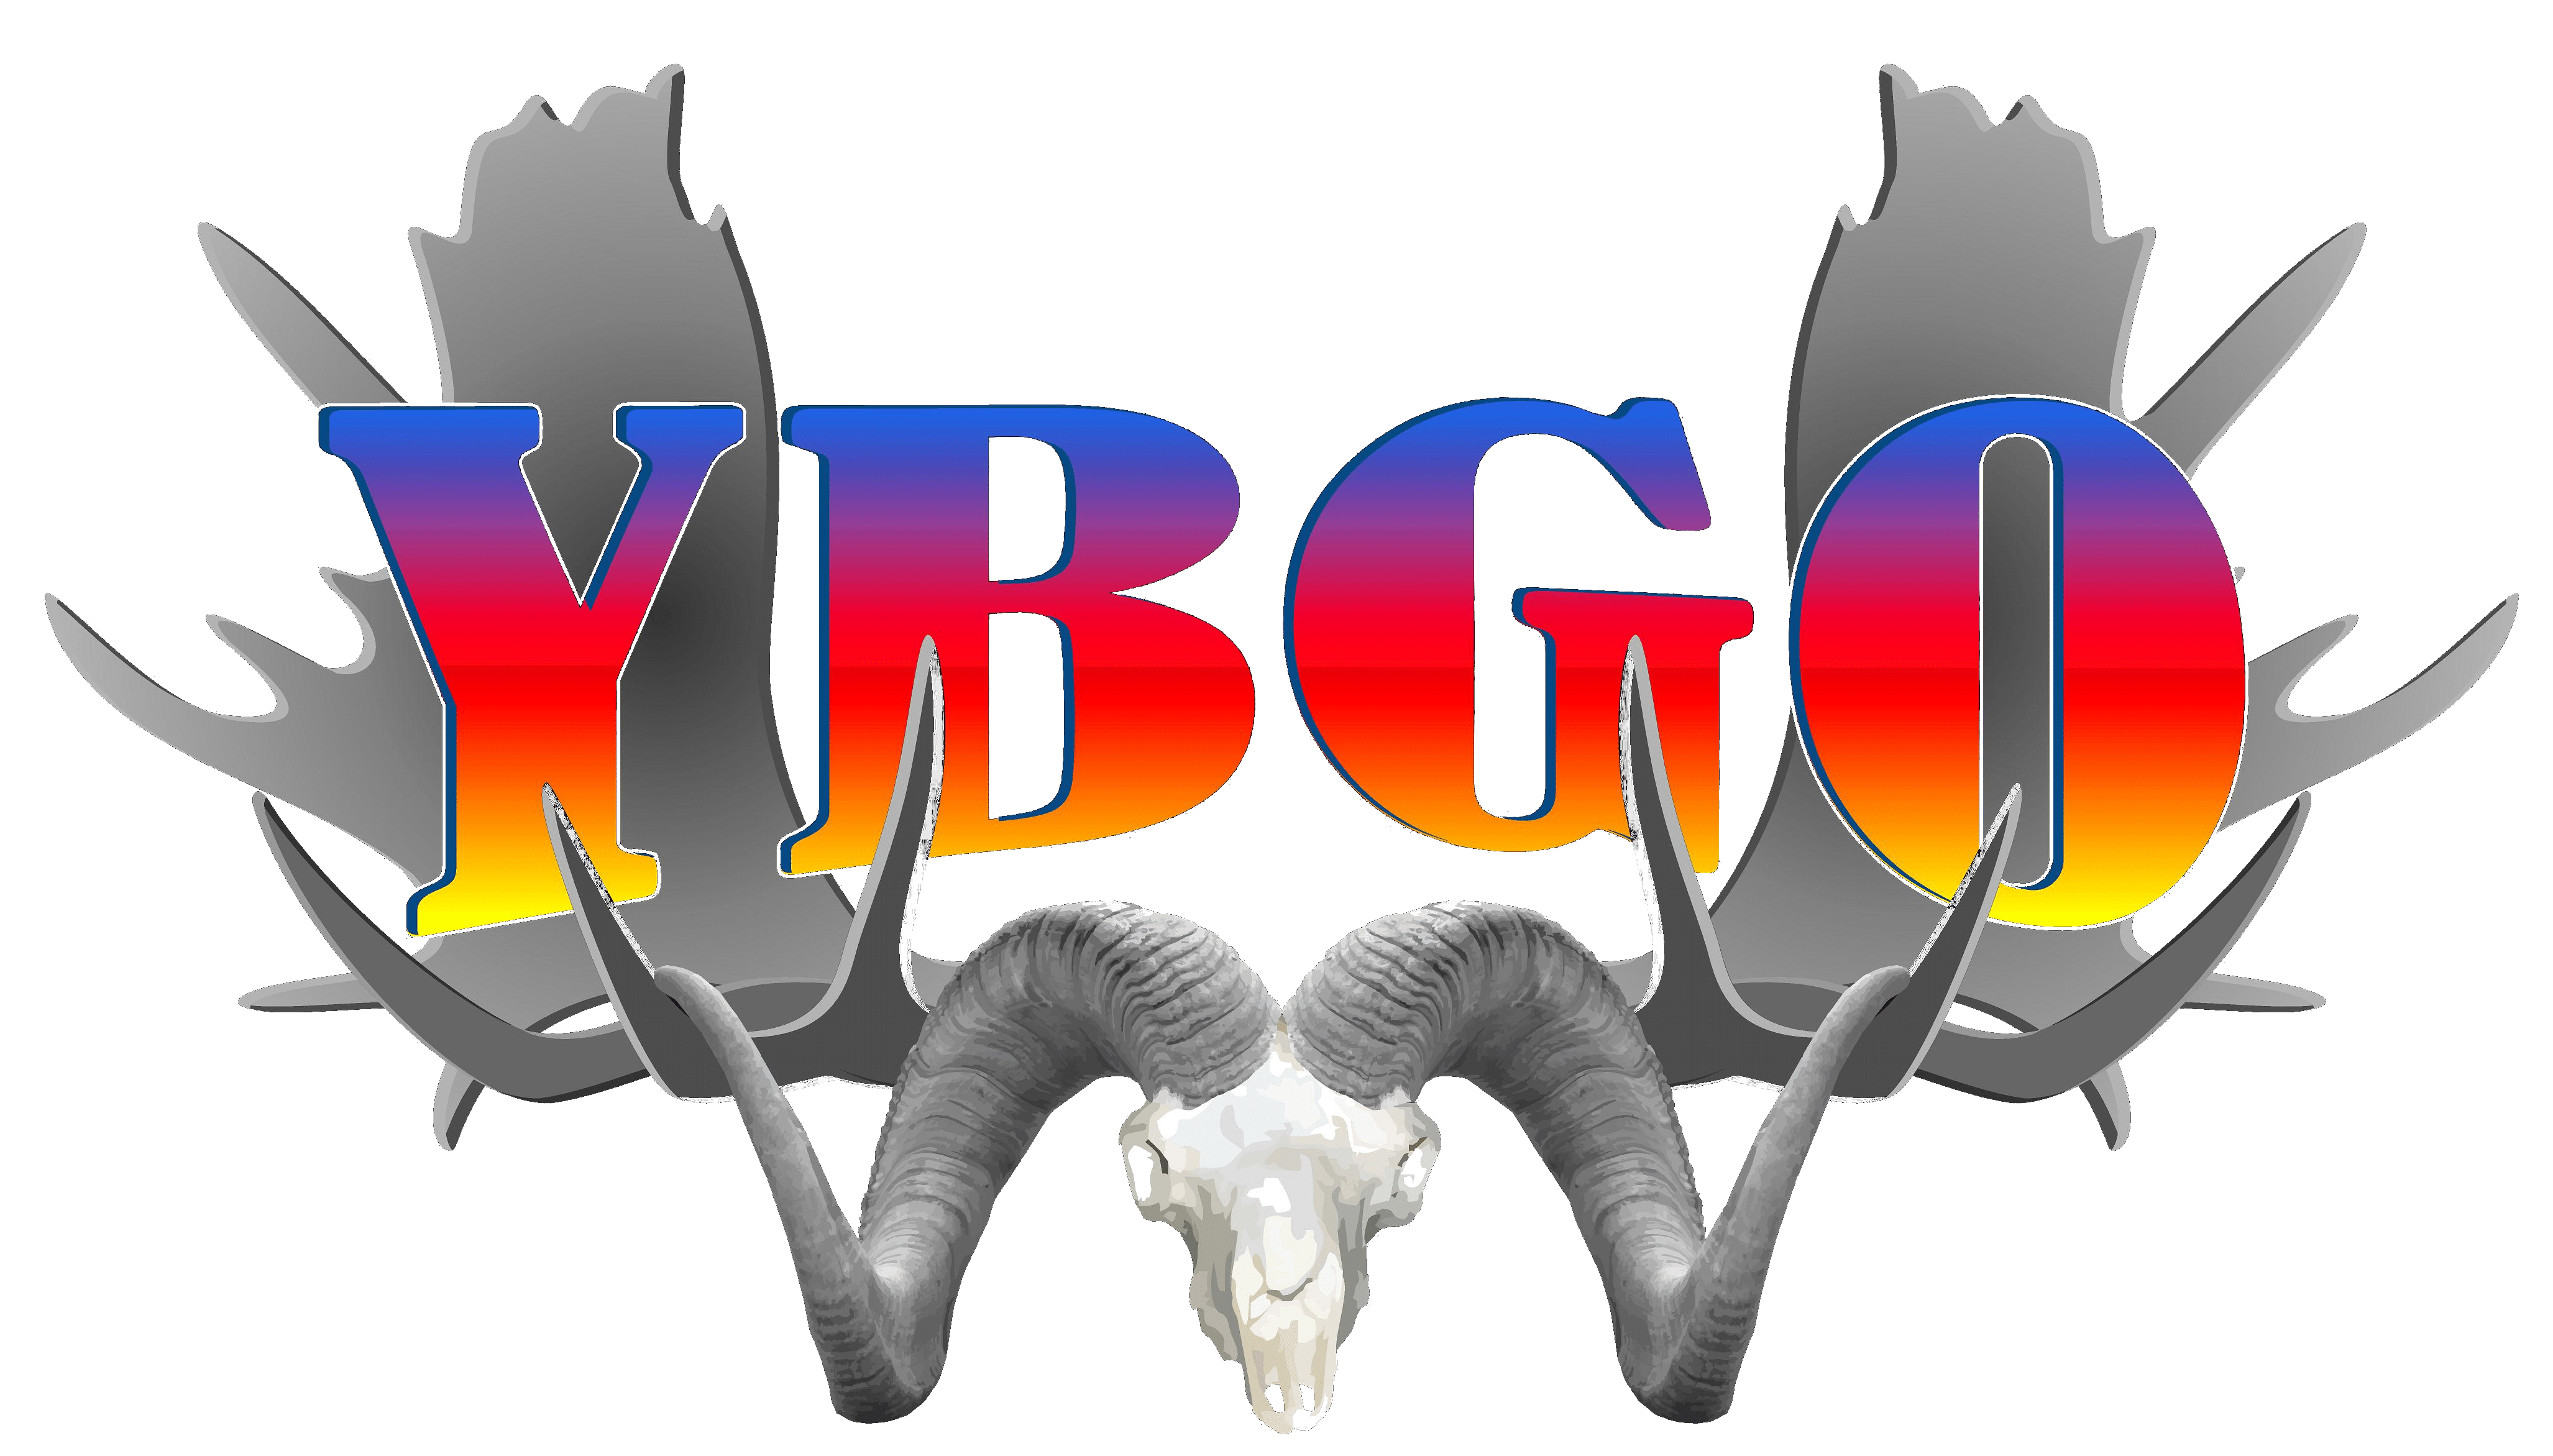 YBGOcolor logo